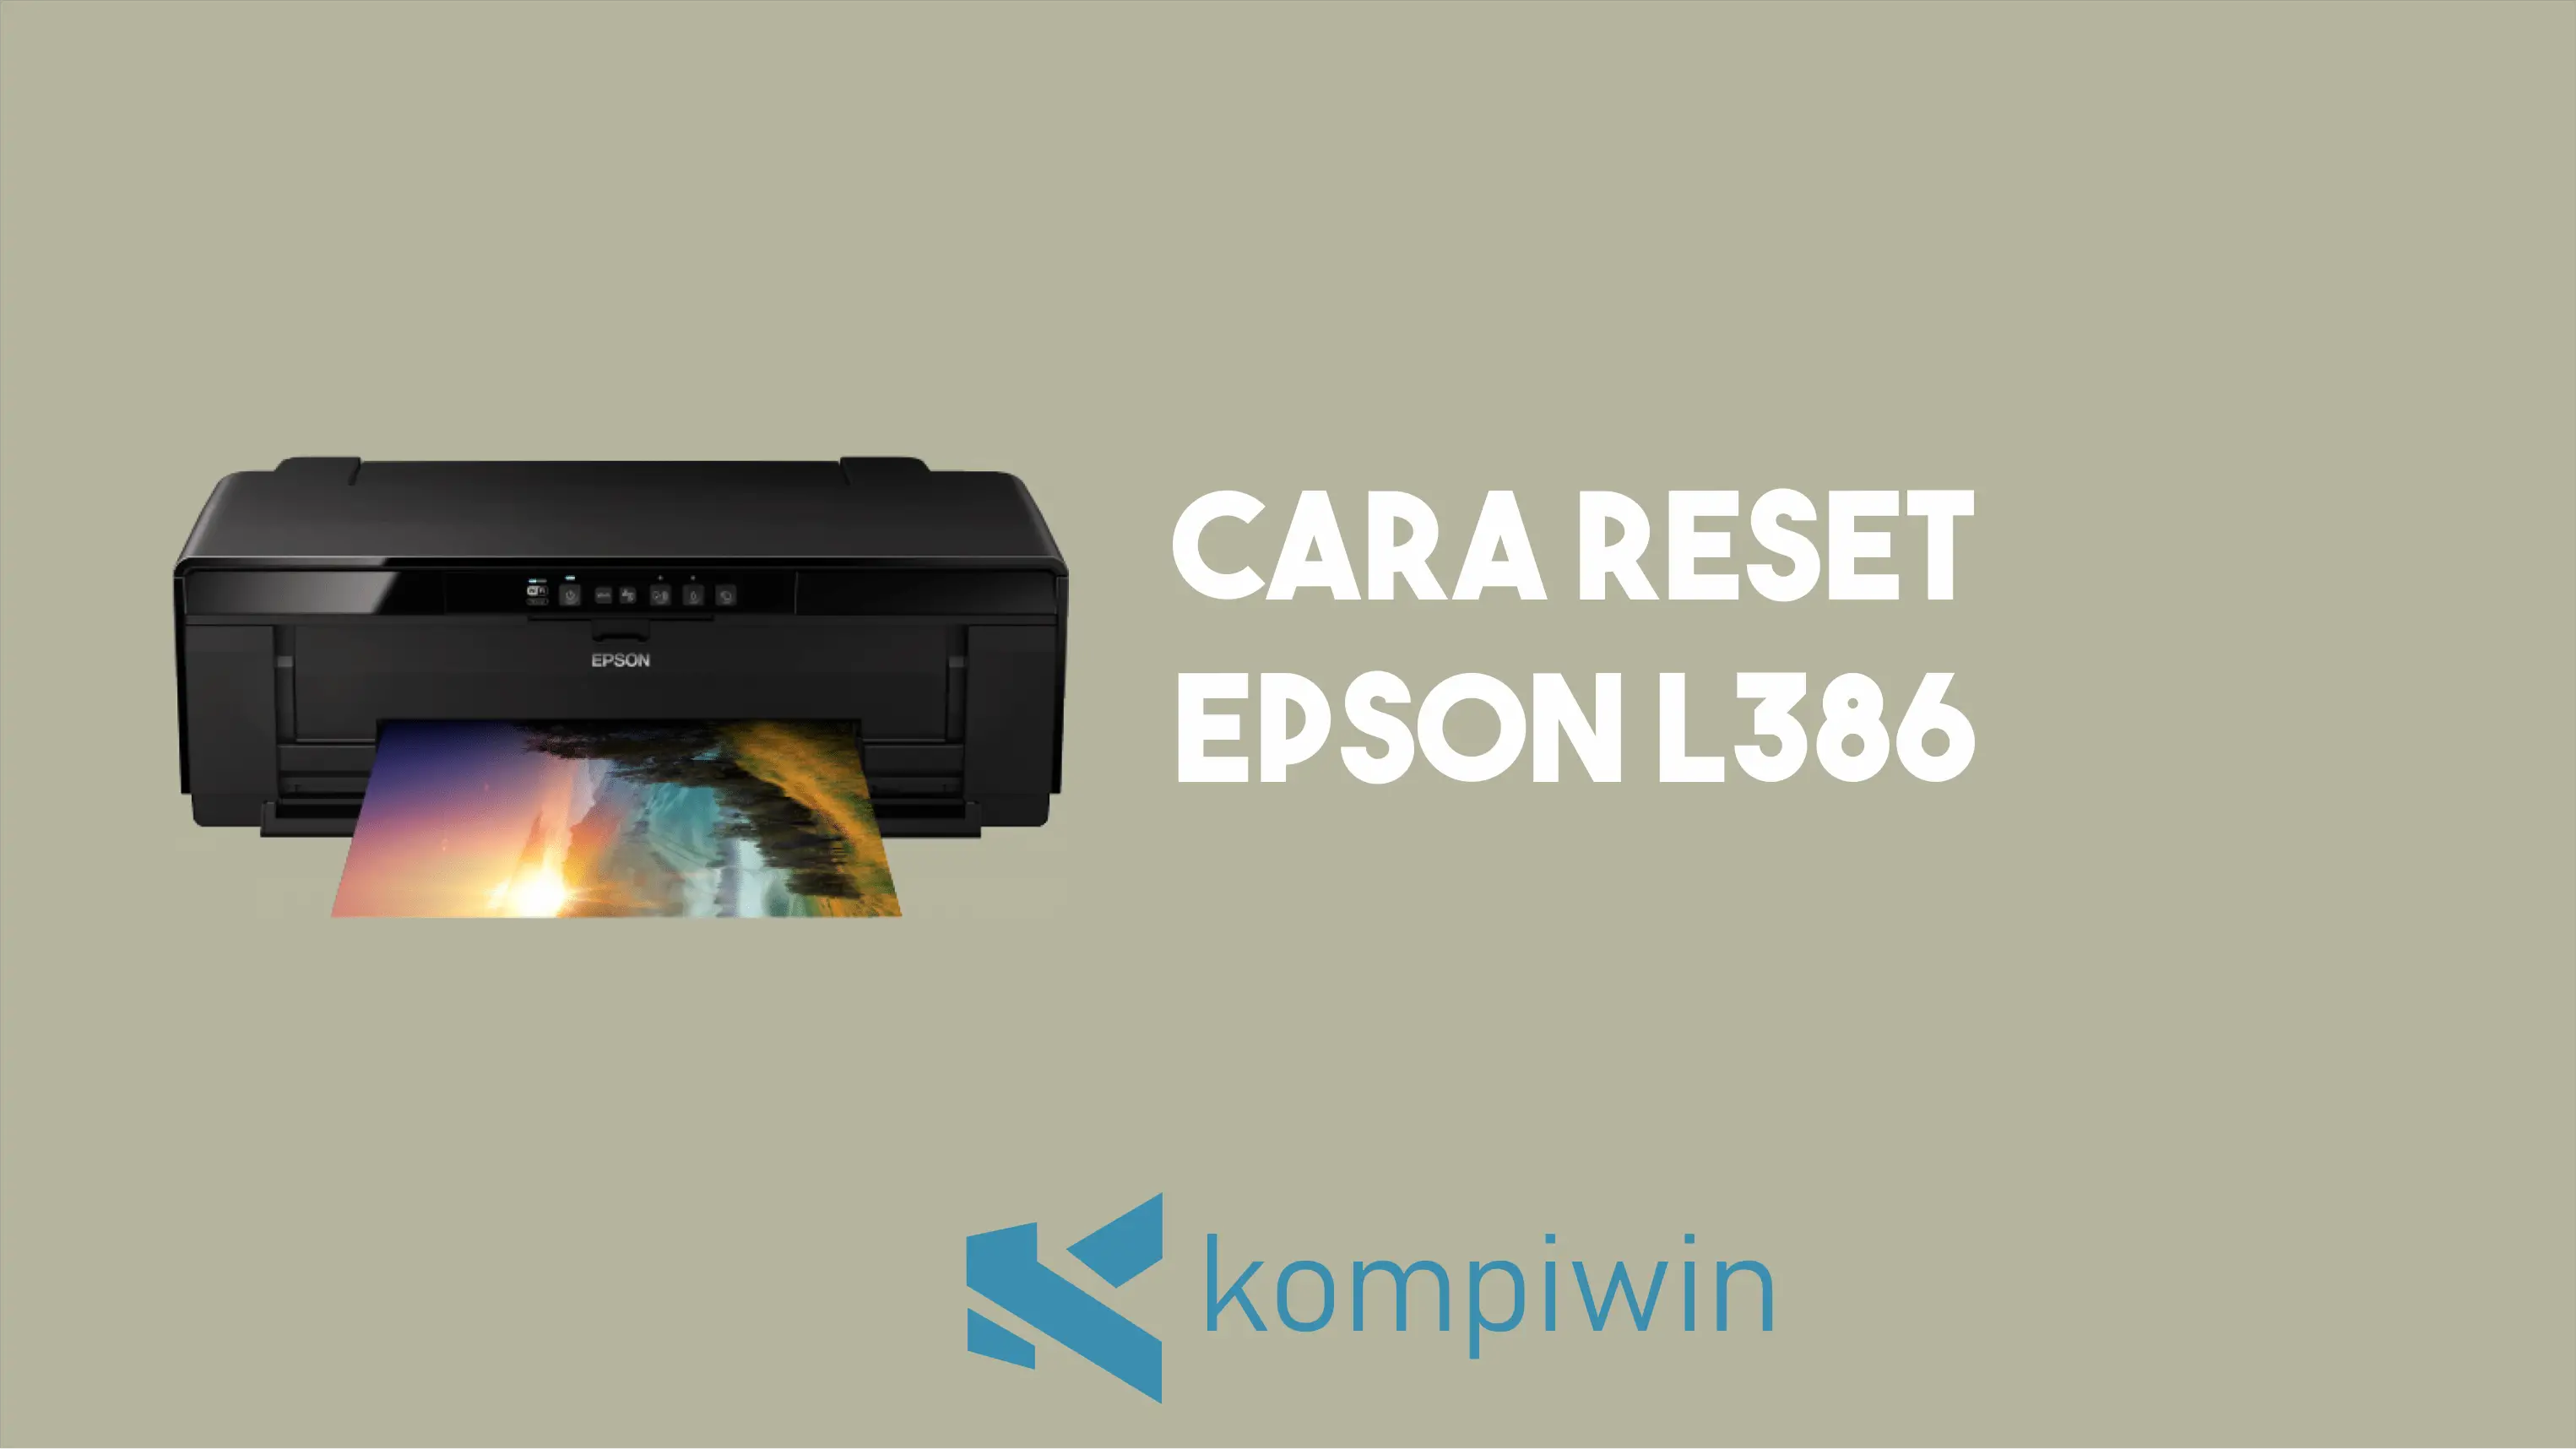 Cara Reset Epson L386